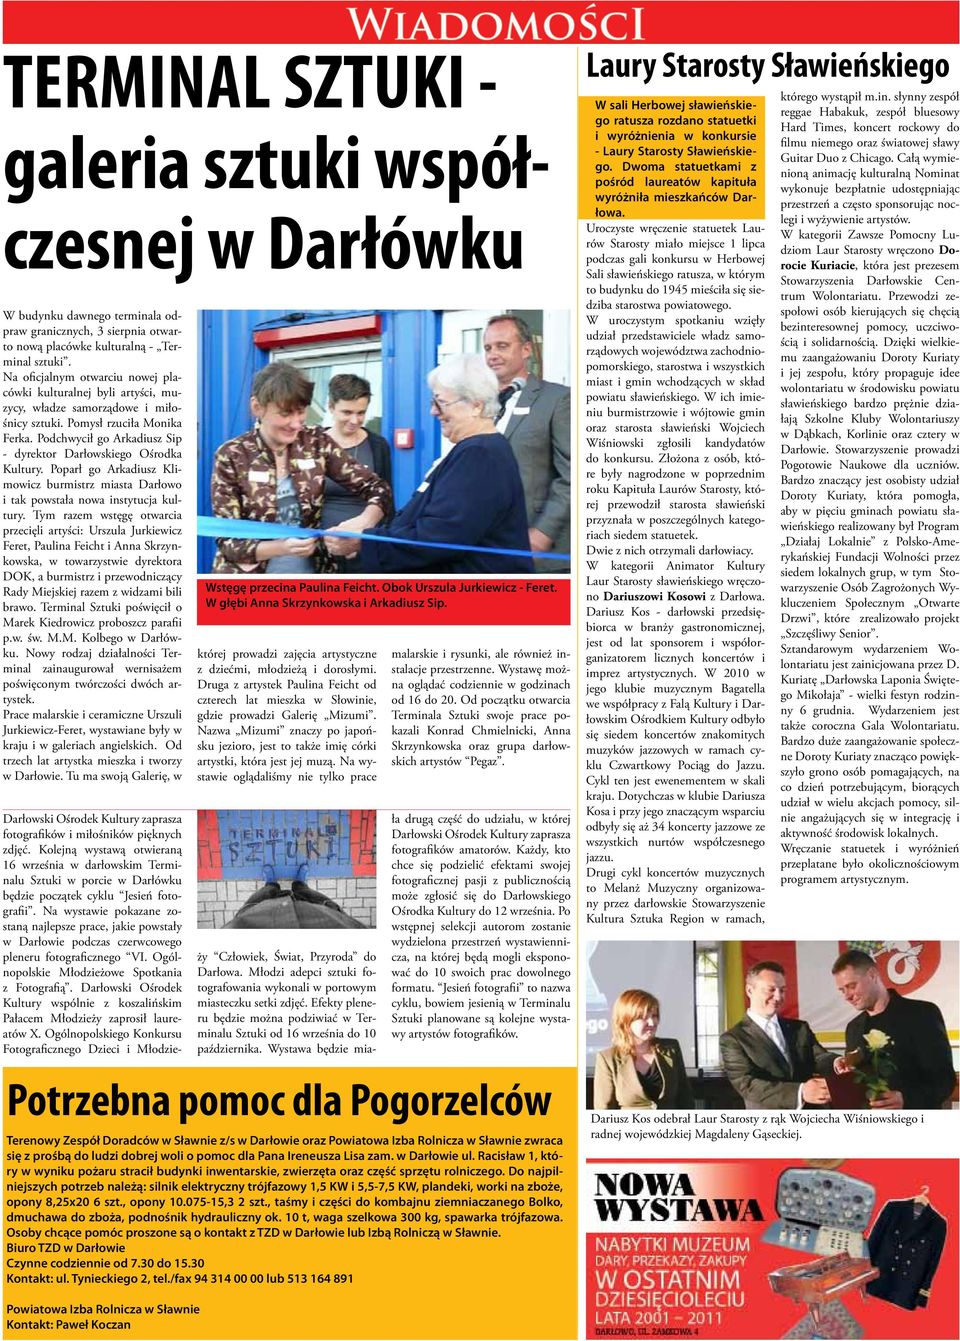 Podchwycił go Arkadiusz Sip - dyrektor Darłowskiego Ośrodka Kultury. Poparł go Arkadiusz Klimowicz burmistrz miasta Darłowo i tak powstała nowa instytucja kultury.